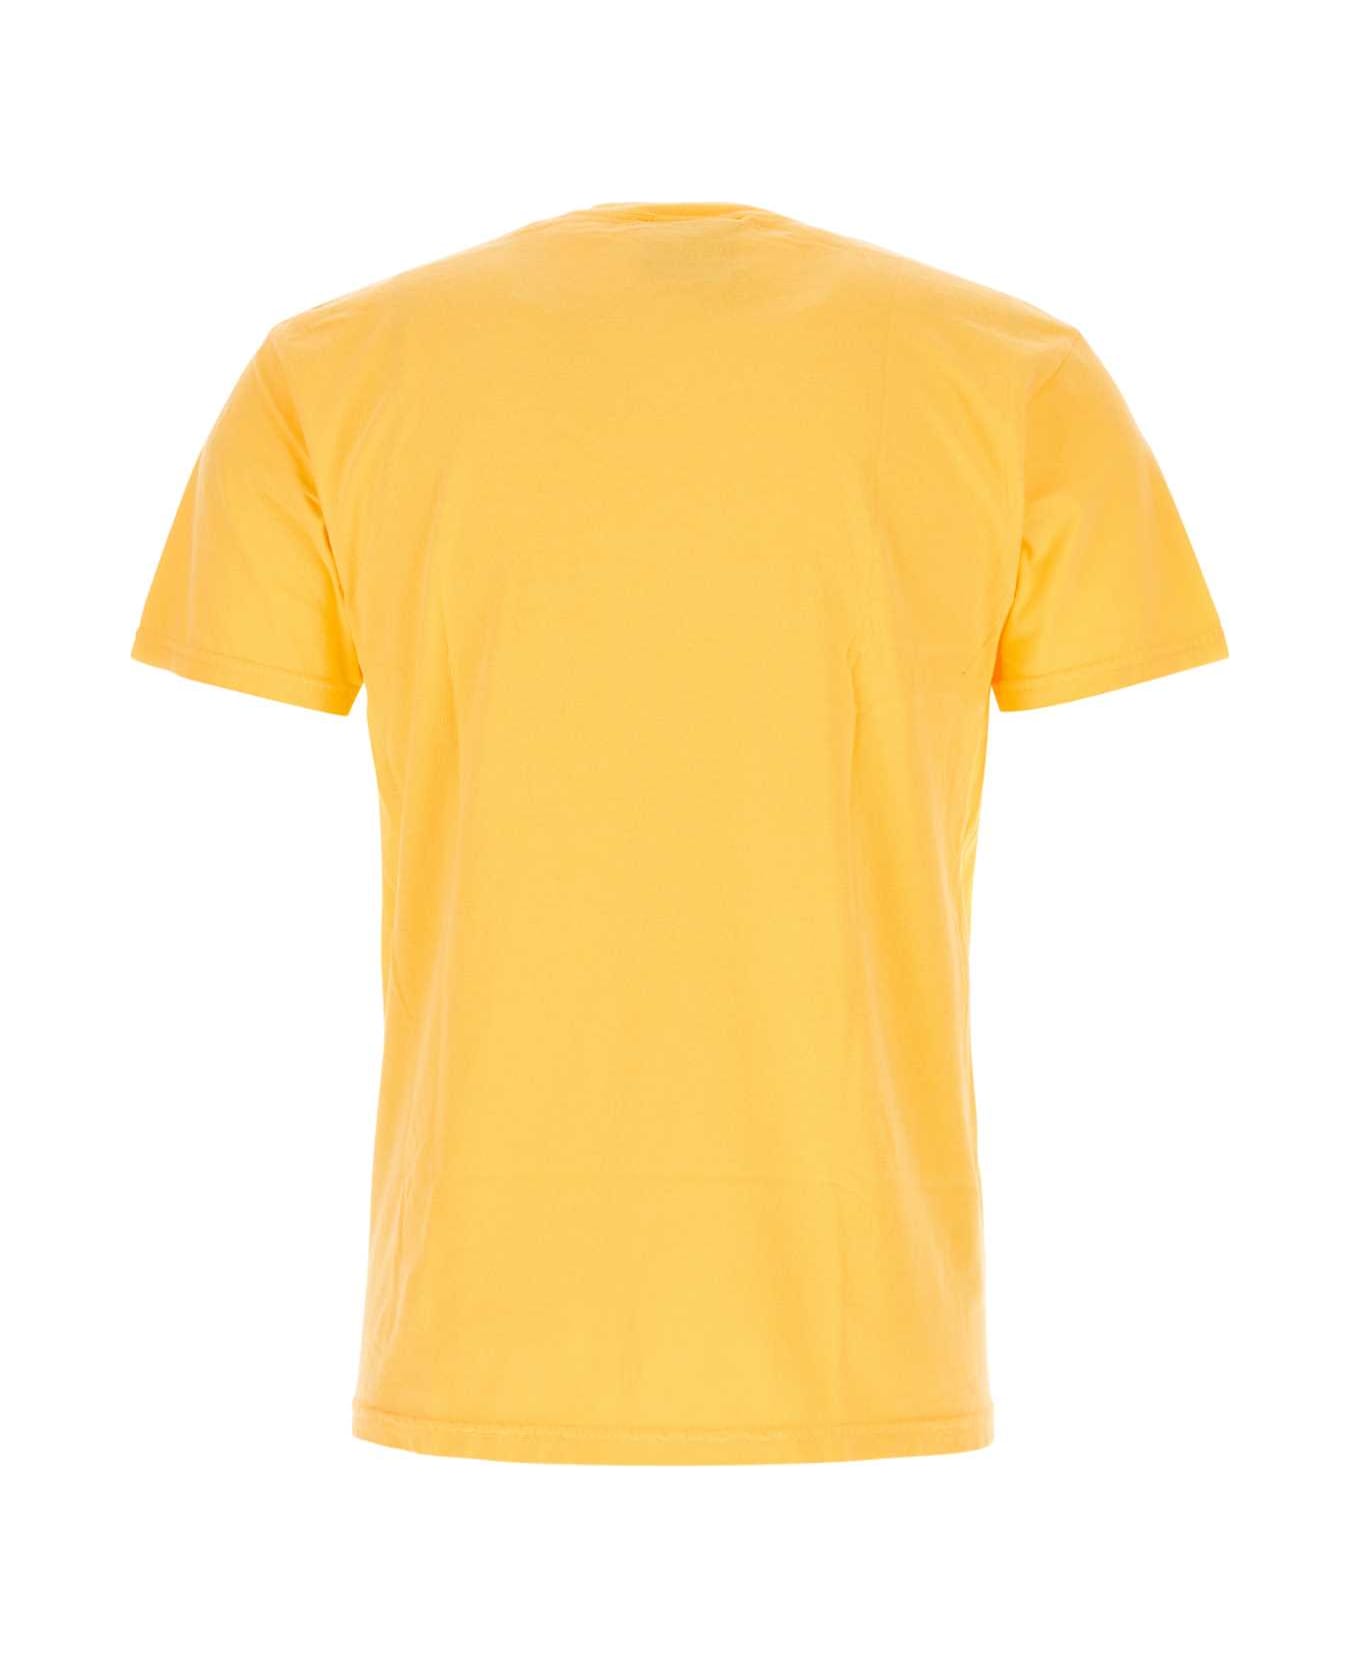 Kidsuper Yellow Cotton T-shirt - THECONARTISTORANGE